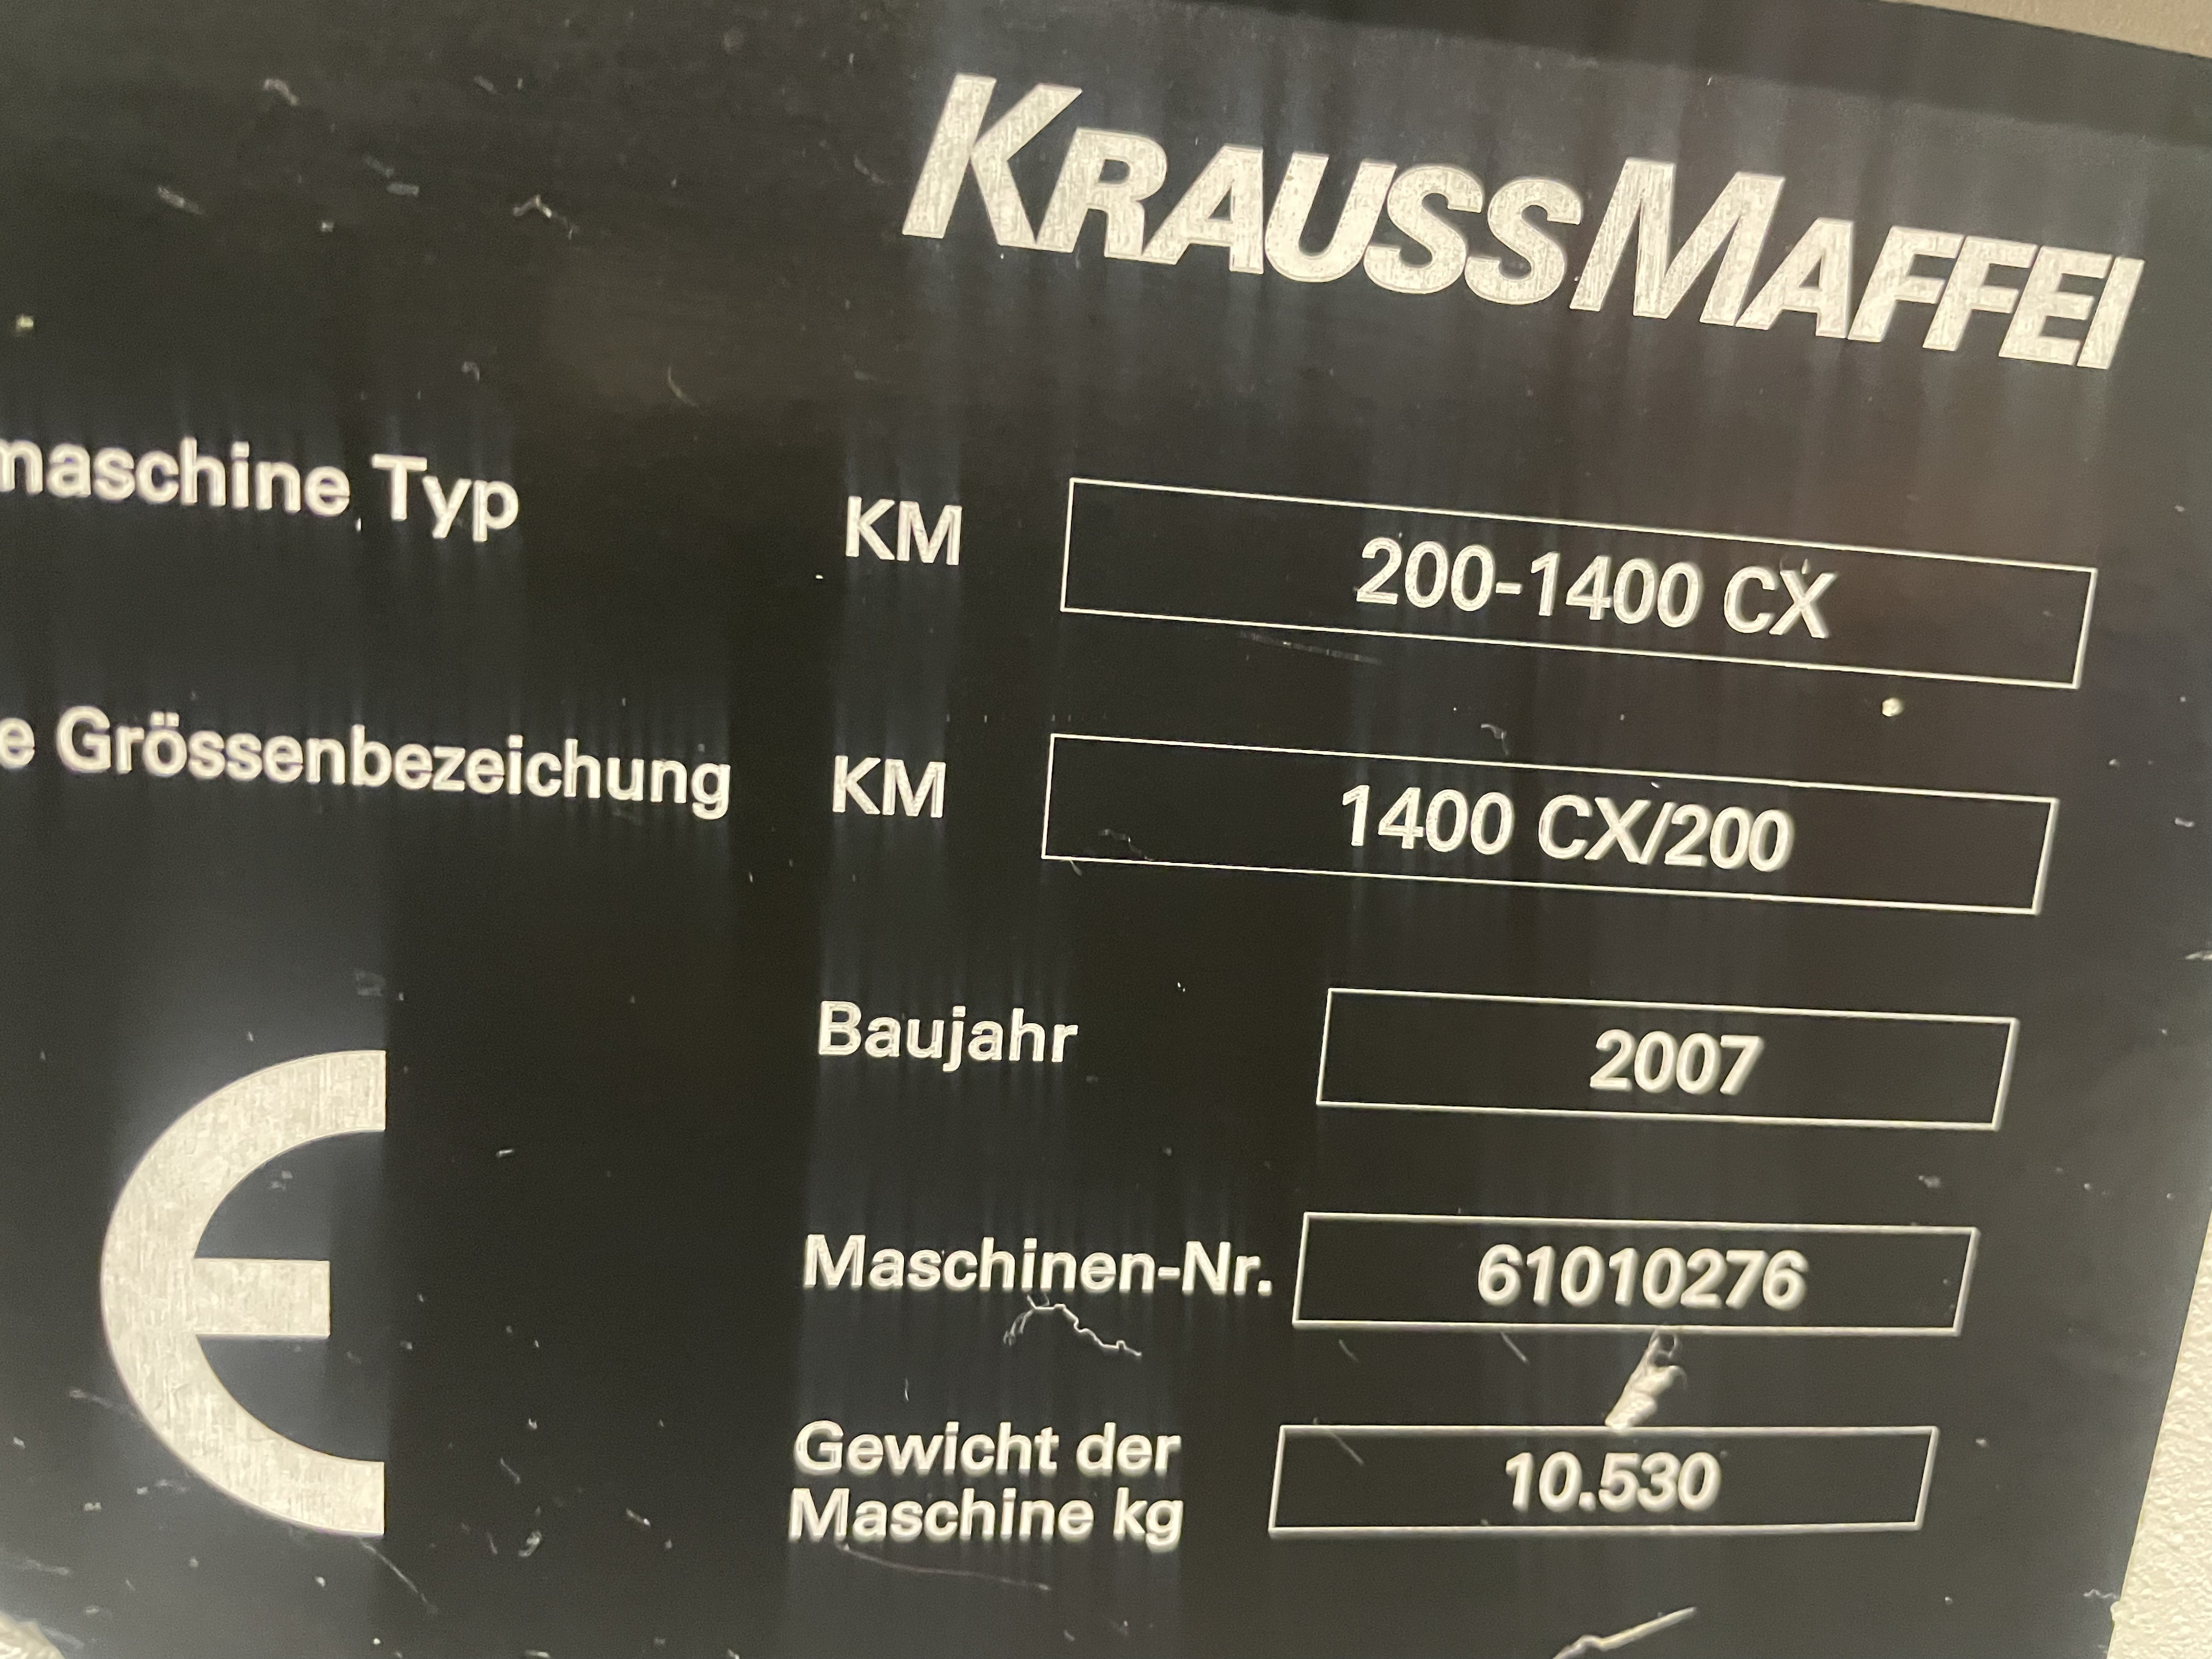 Krauss-Maffei KM 200-1400 CX